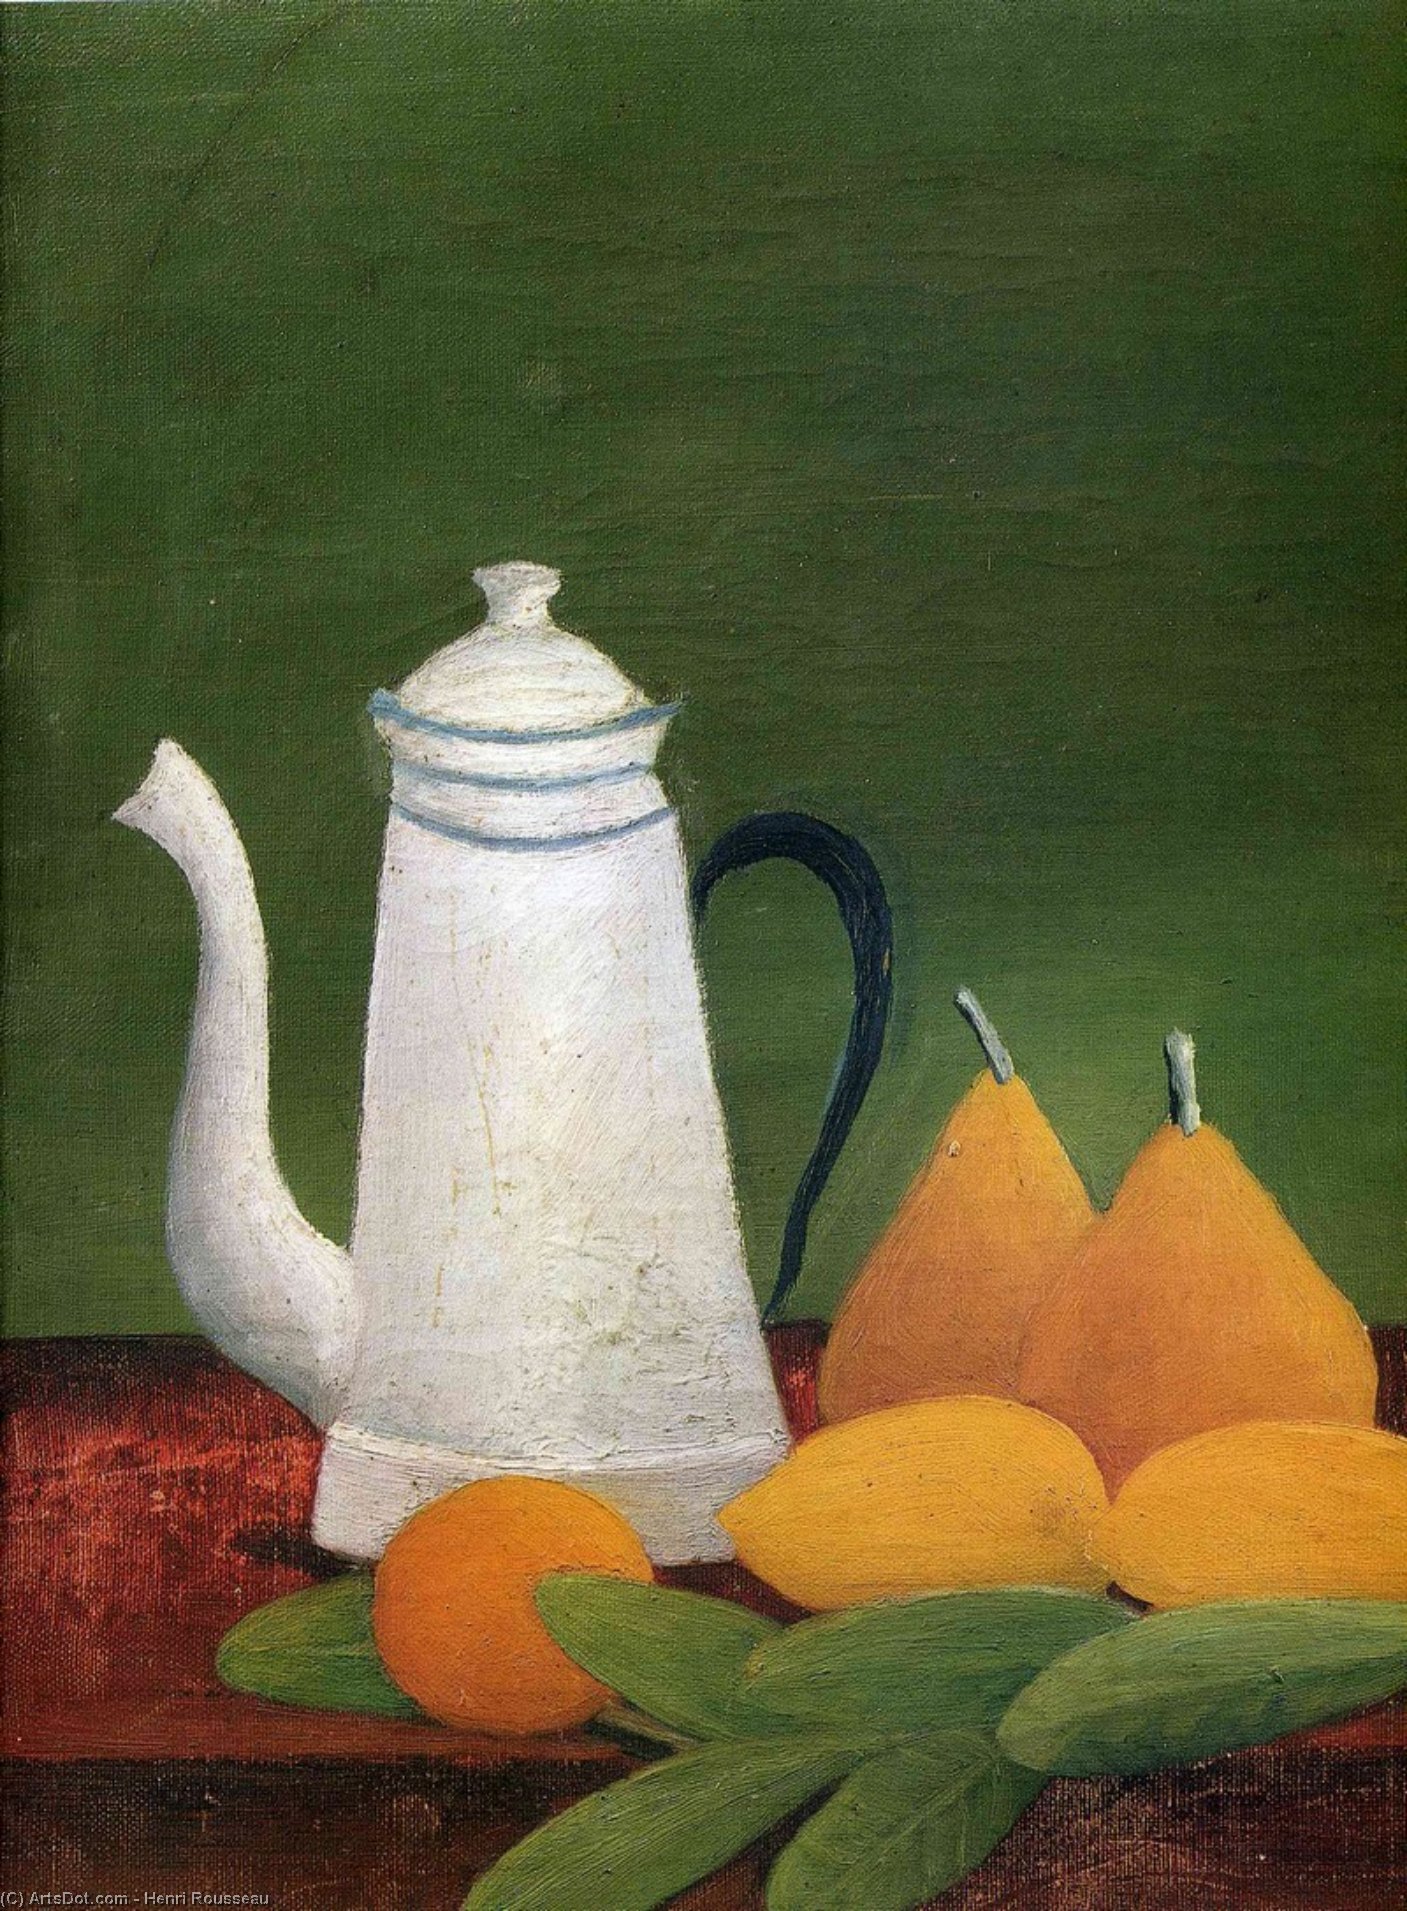 Wikioo.org - Bách khoa toàn thư về mỹ thuật - Vẽ tranh, Tác phẩm nghệ thuật Henri Julien Félix Rousseau (Le Douanier) - Still life with teapot and fruit